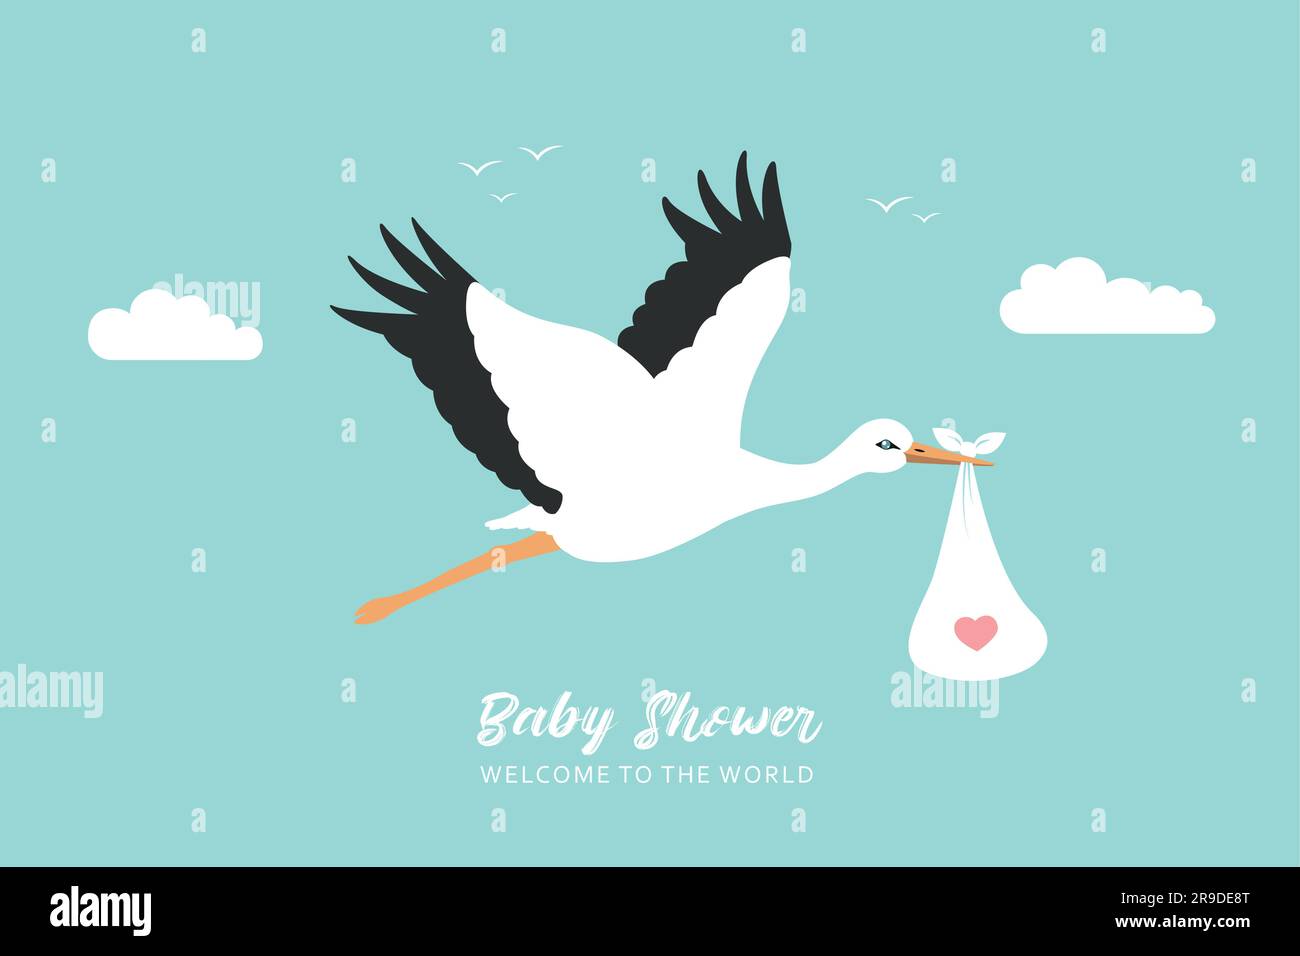 Begrüßungsgrußkarte für Babys mit Storch in blauem Himmel Stock Vektor